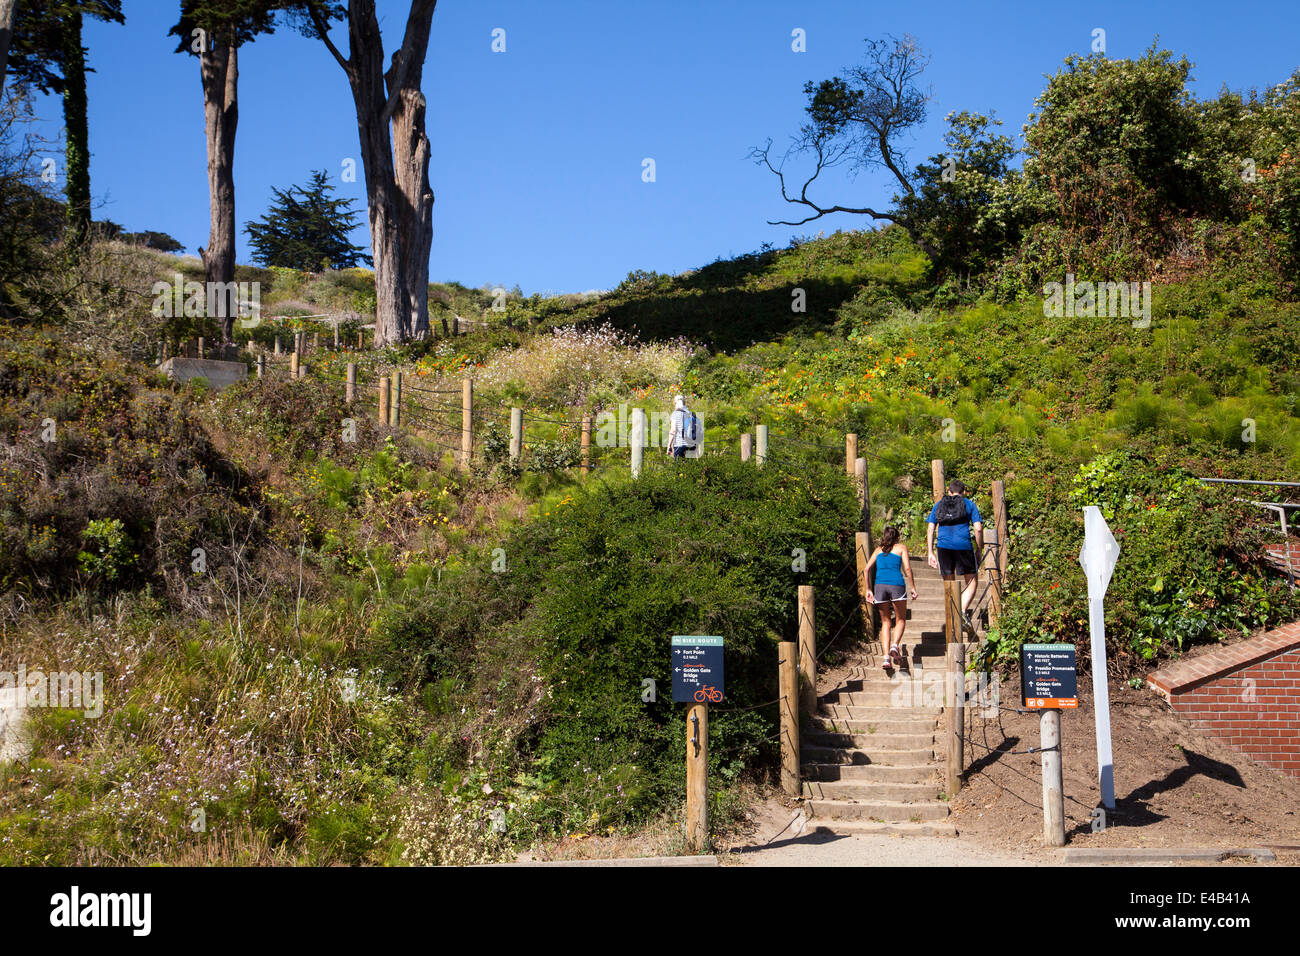 Per gli amanti del jogging jogging fino alla batteria est sentiero che conduce fino al Golden Gate Bridge di San Francisco, California, Stati Uniti d'America. Foto Stock